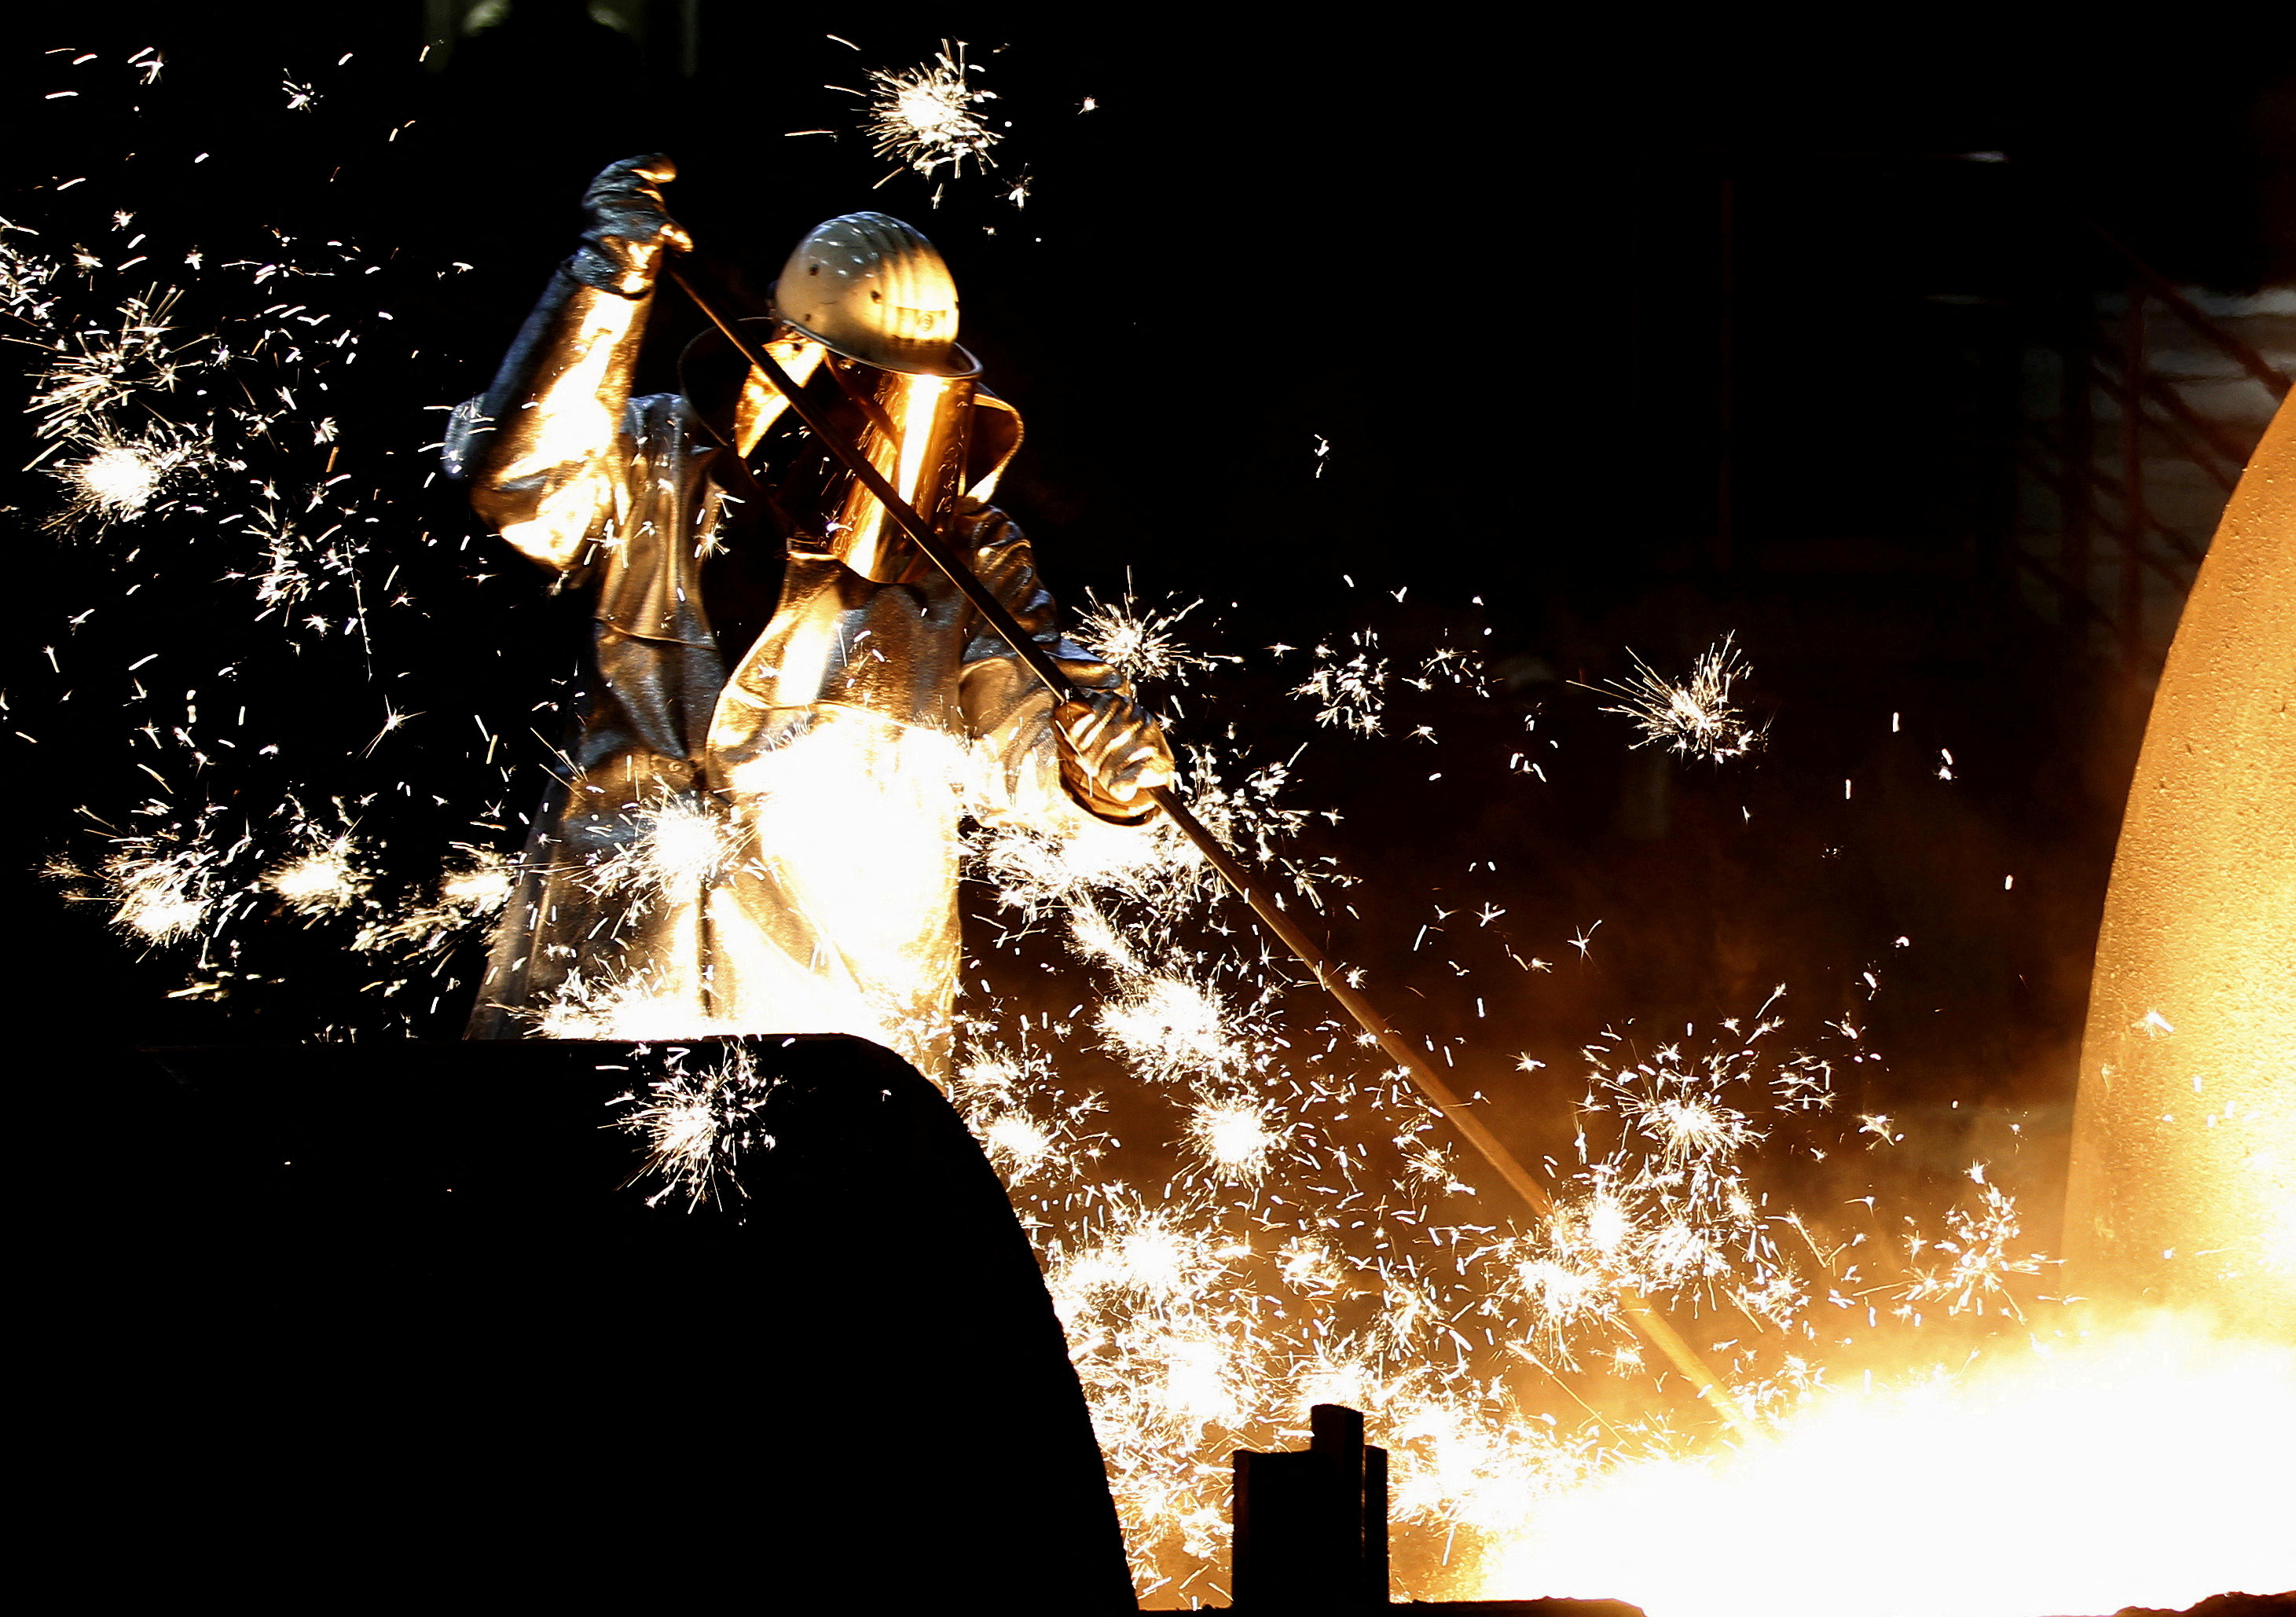 A German steelmaker ThyssenKrupp worker controls a blast furnace in Duisburg